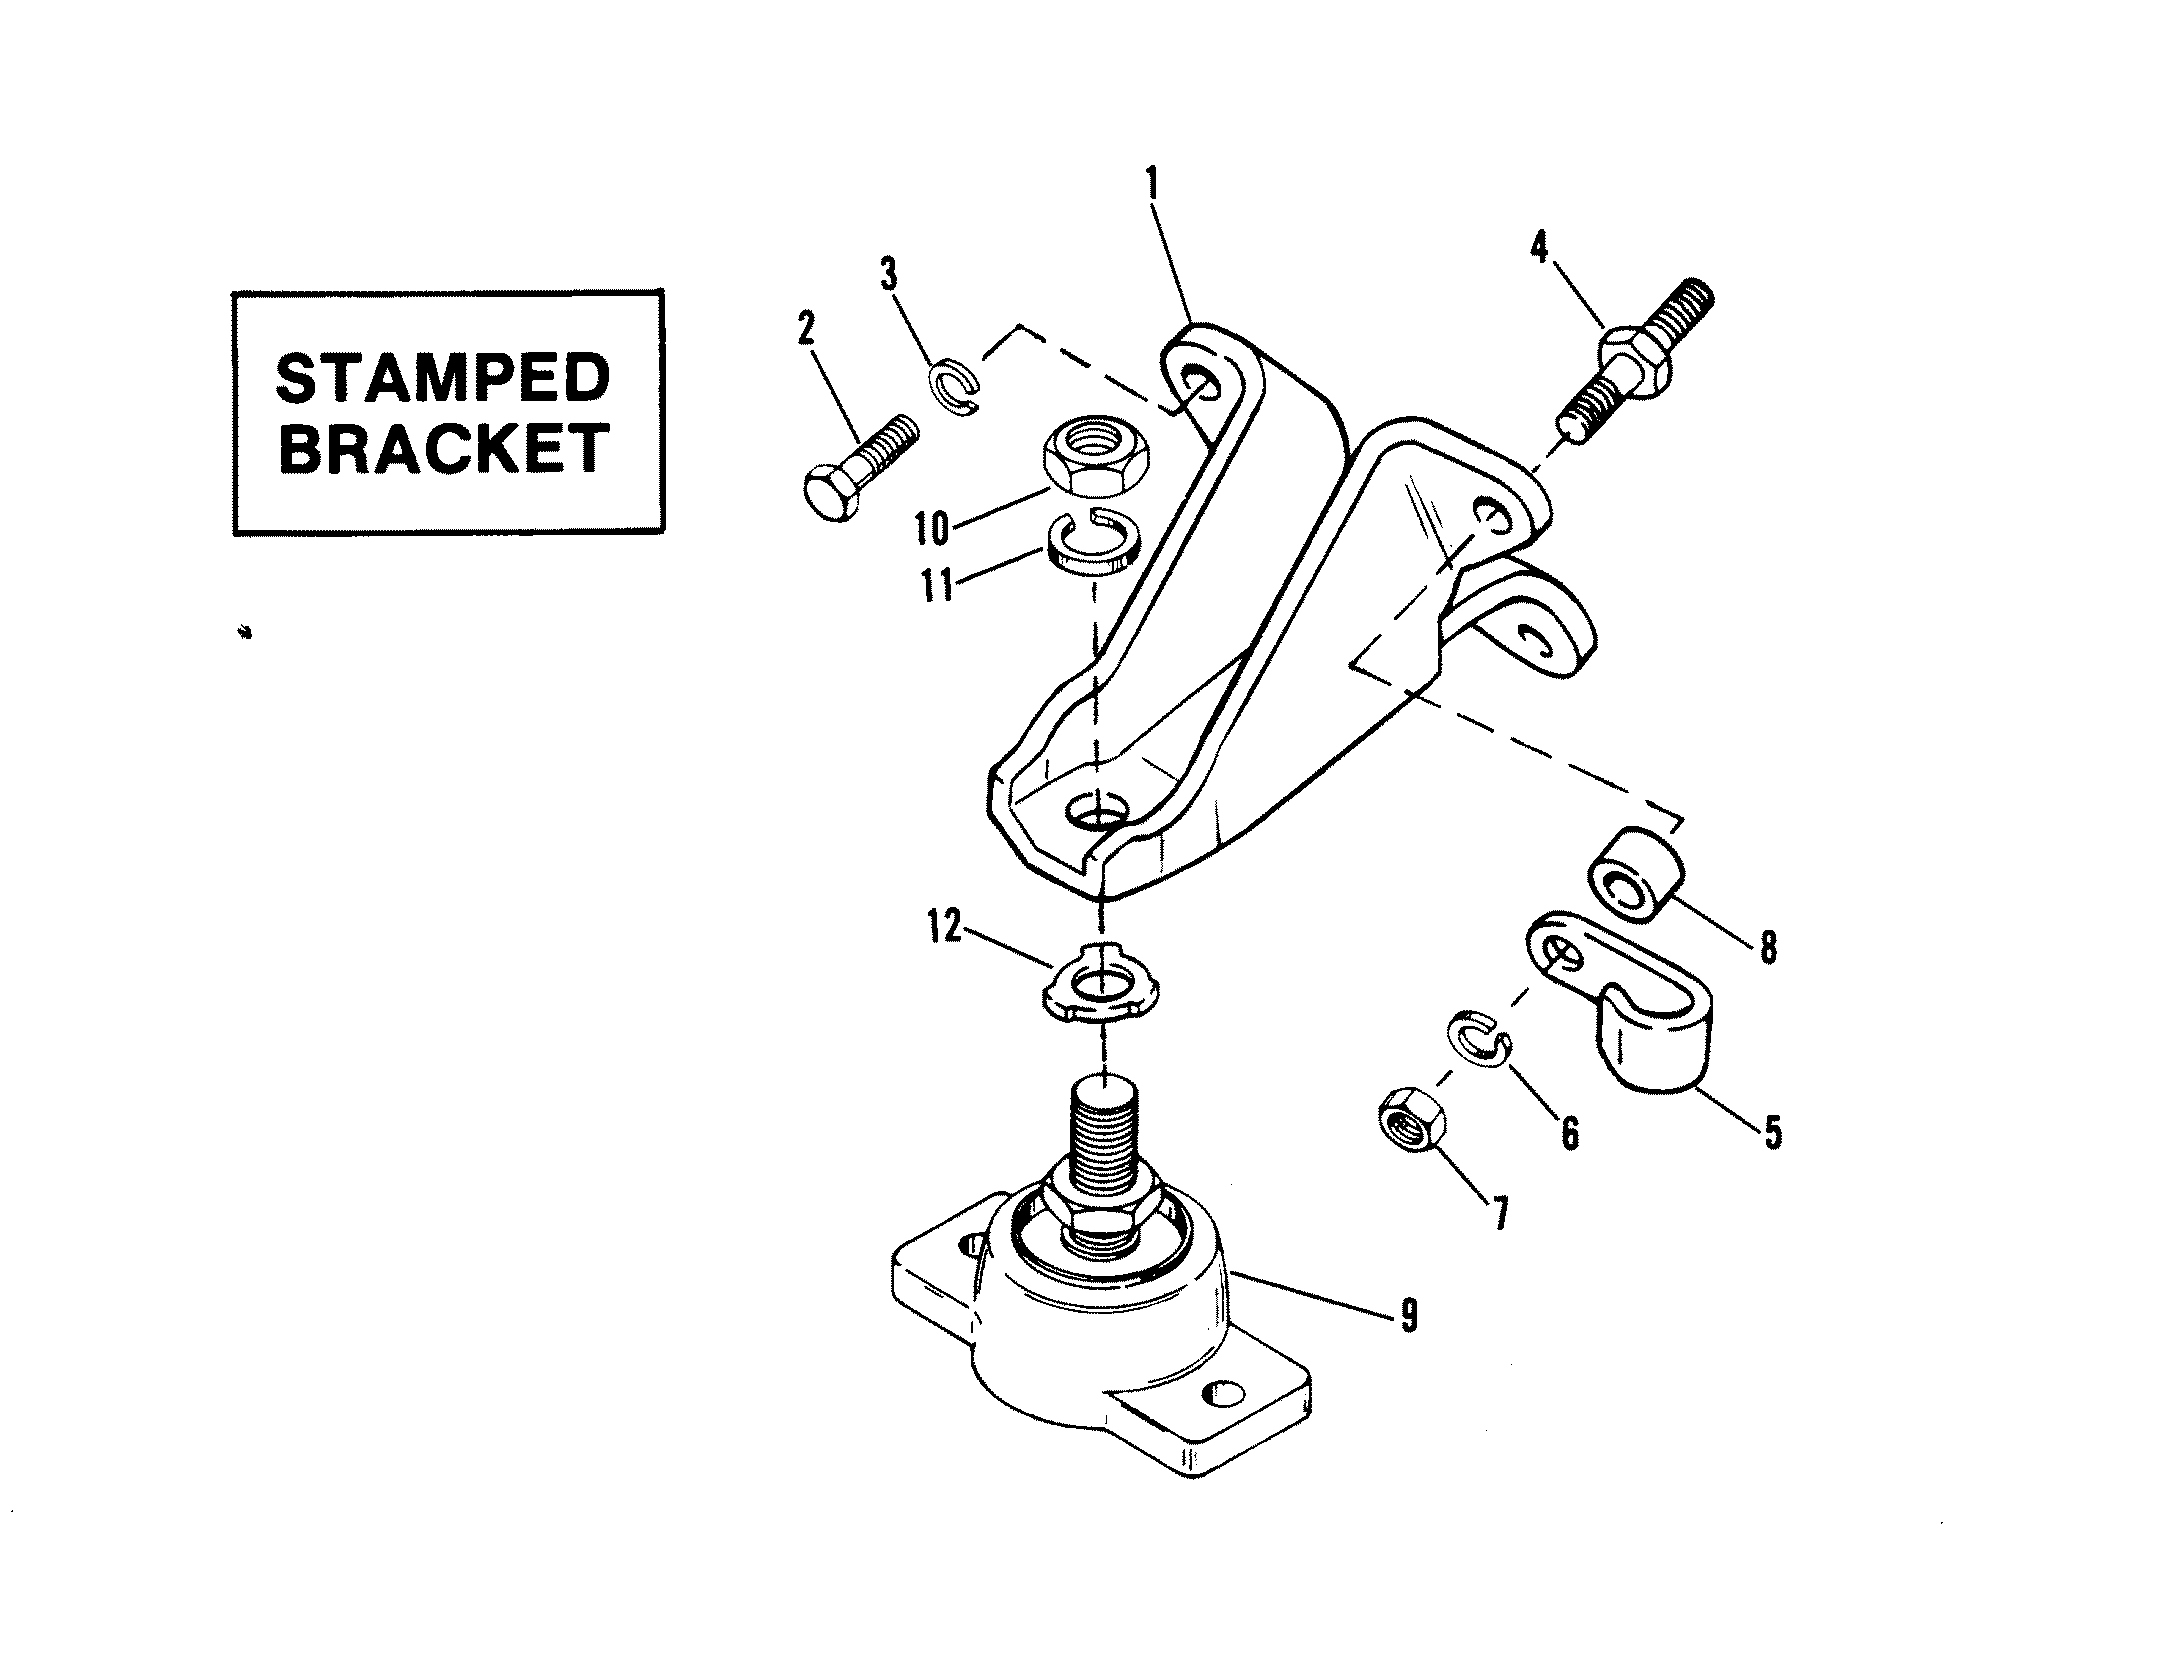 ENGINE MOUNTING (STAMPED BRACKET)